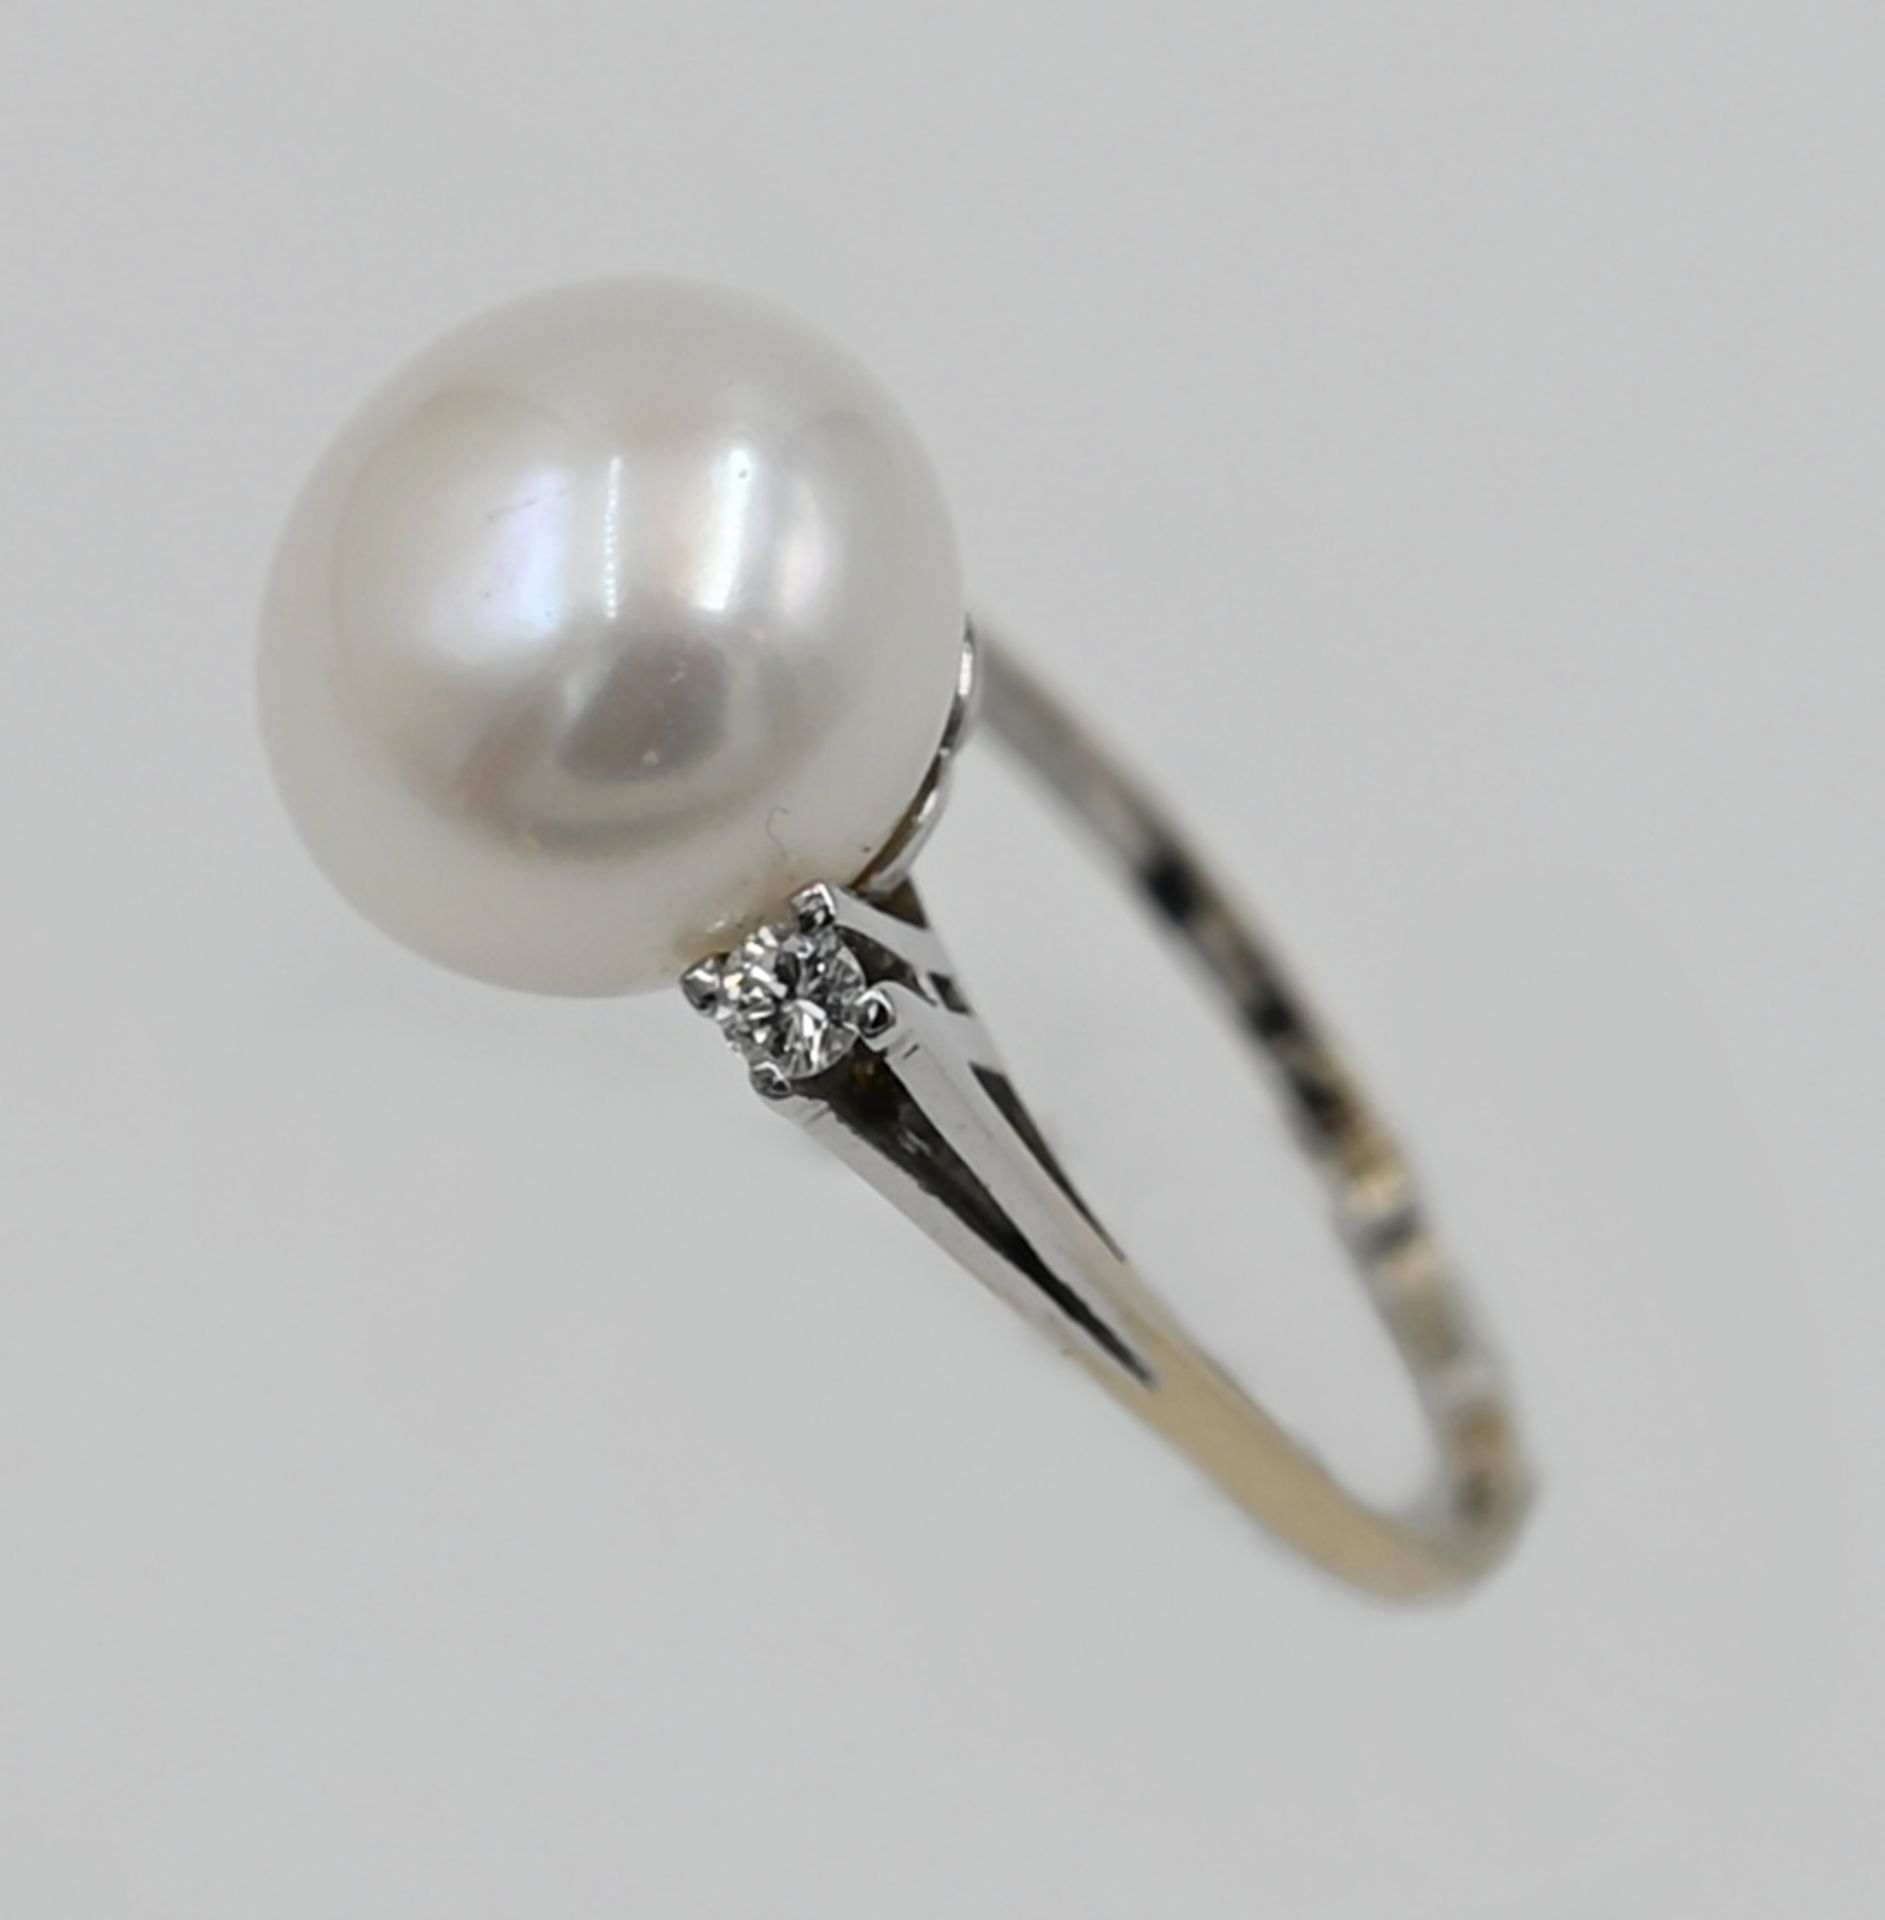 1 Damenring WG 18ct. m. Perle, Durchmesser ca. 1,2cm, mit 2 Brillanten, Ringgröße ca. 56,5 min. Tsp. - Bild 2 aus 2